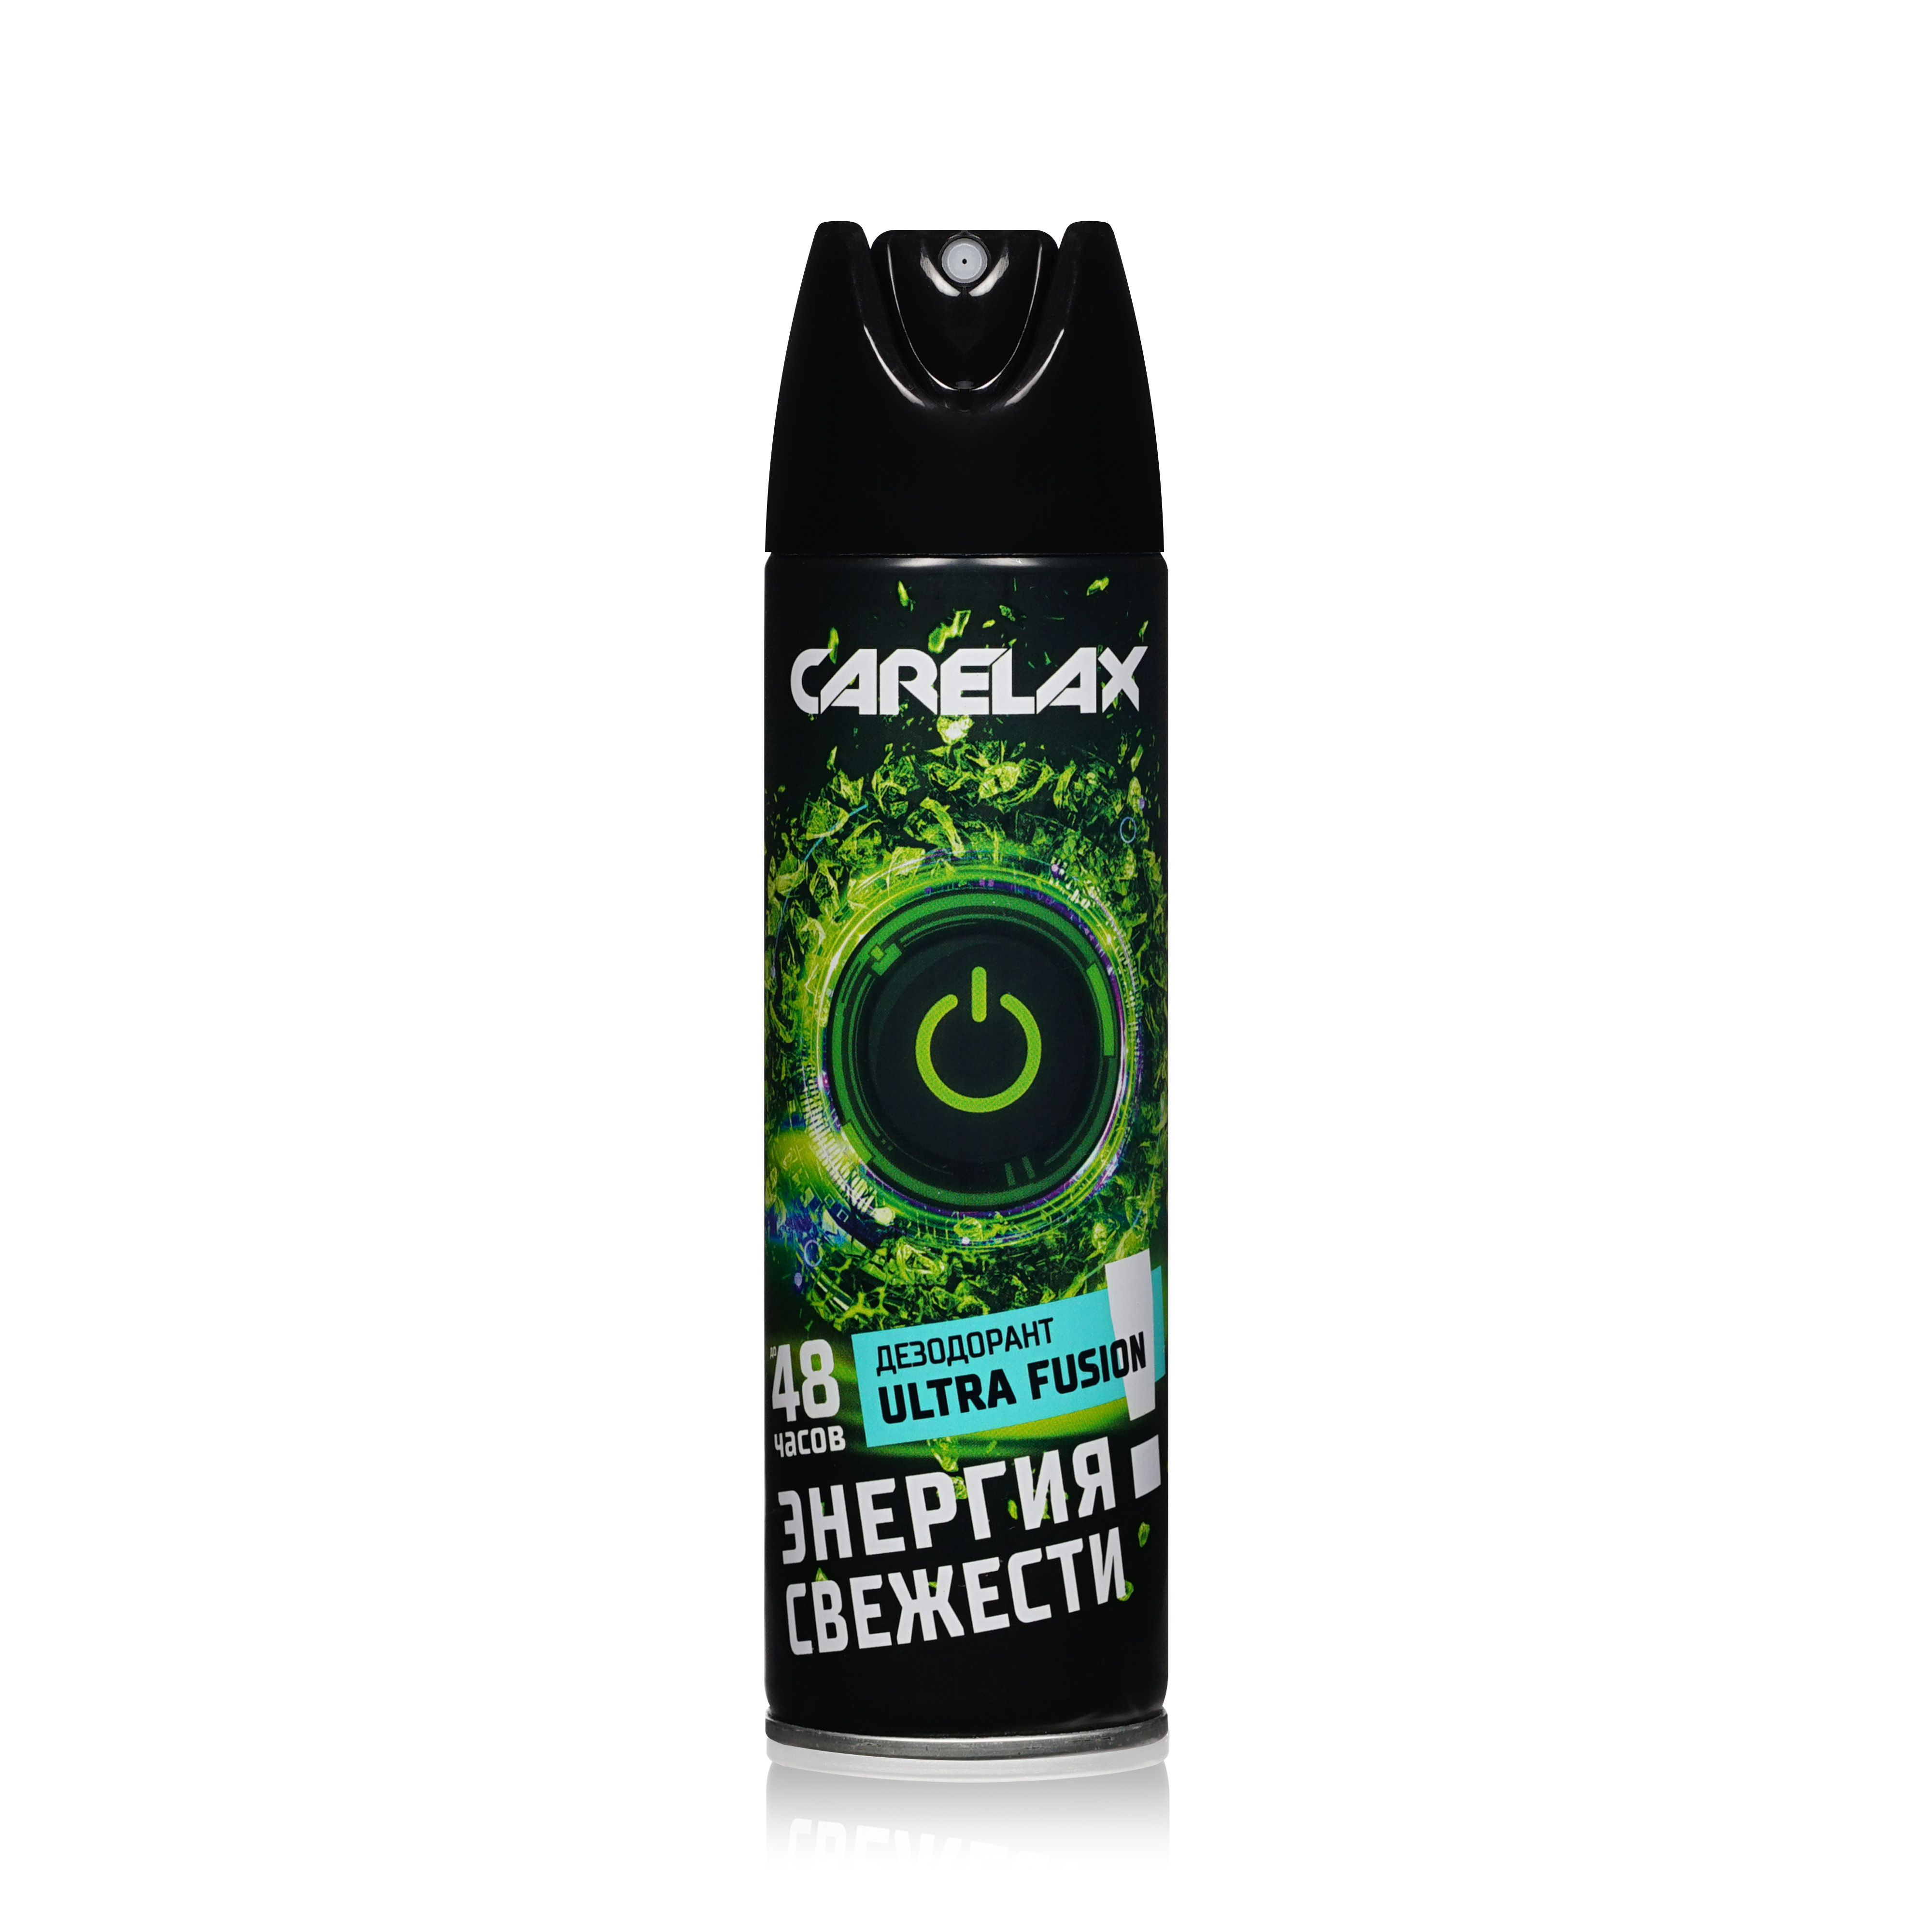 Дезодорант спрей Carelax Energy Ultra Fusion мужской 150 мл vichy ом набор мужской дезодорант ролик для чувств кожи 48ч 50 мл 2 шт скидка 50% на второй продукт